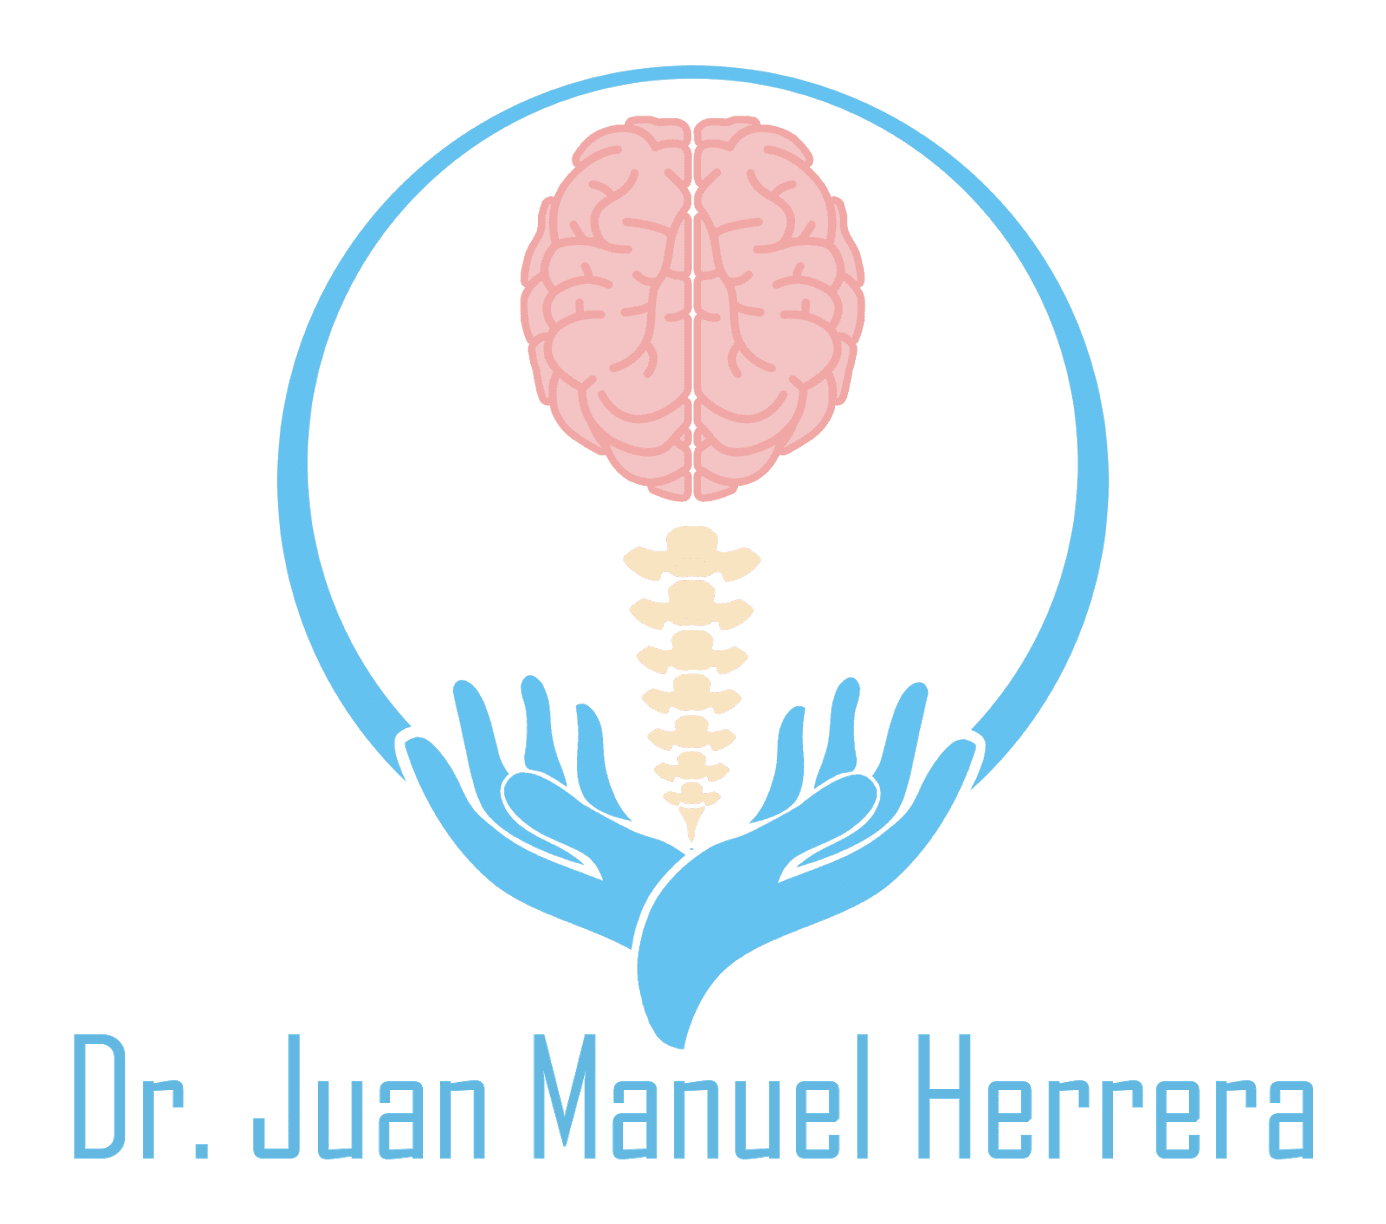 Dr. Juan Manuel Herrera